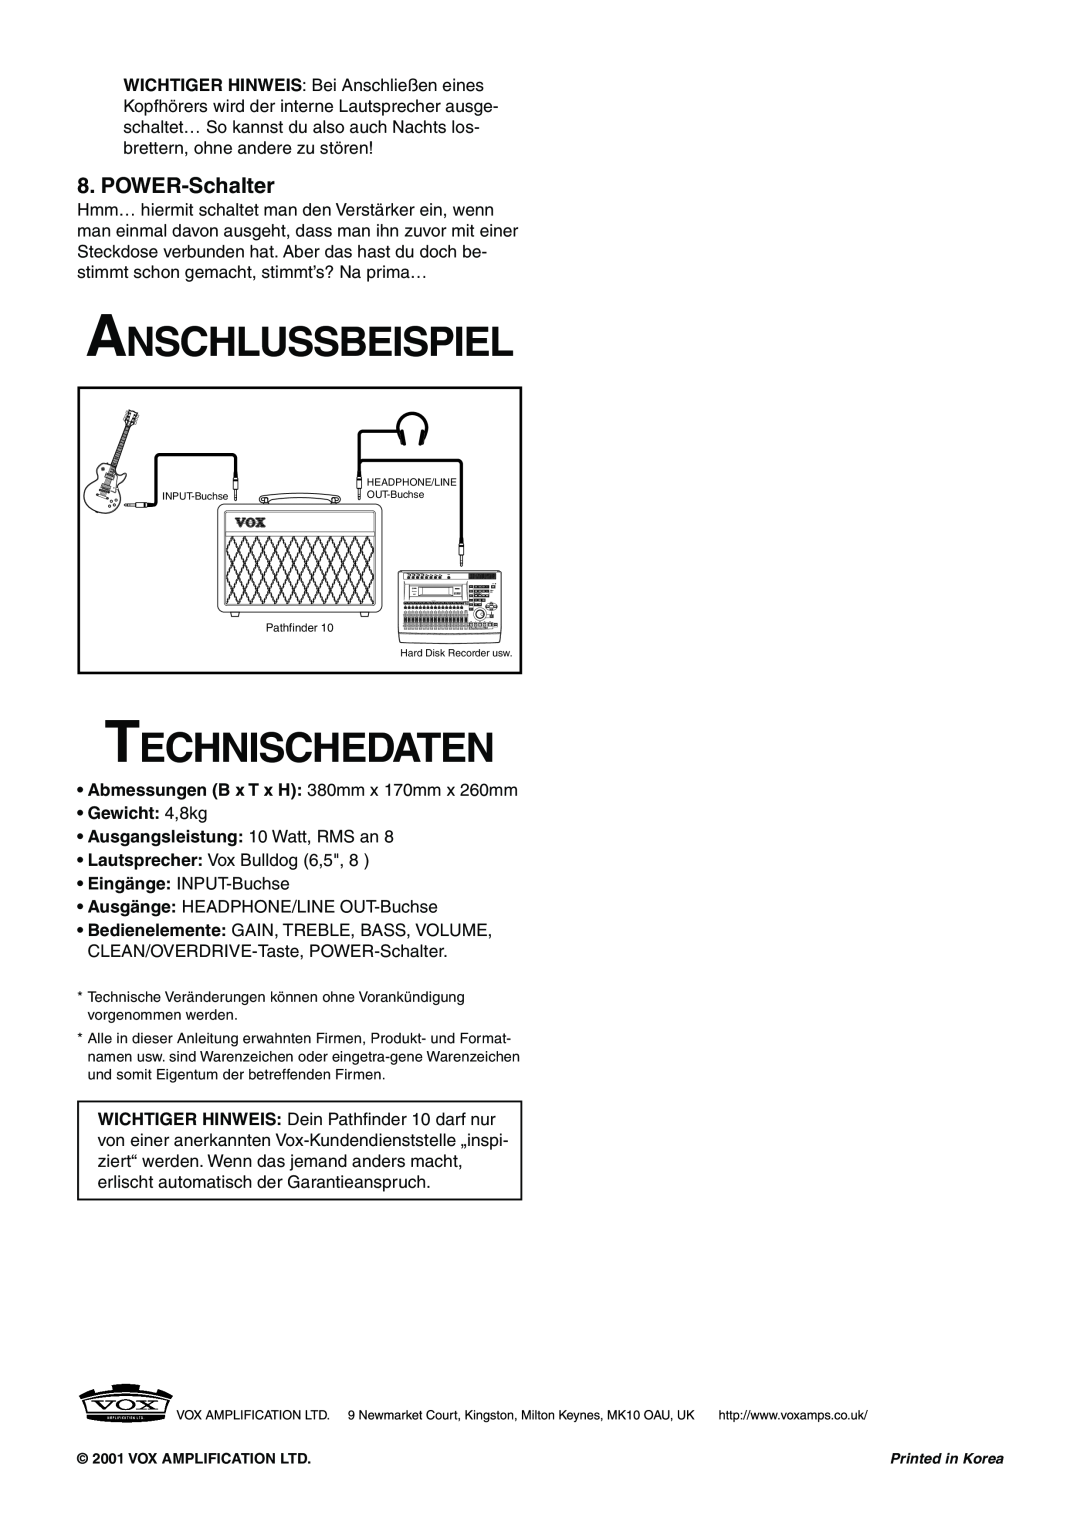 Vox 10 manual Anschlussbeispiel, Technischedaten, POWER-Schalter 